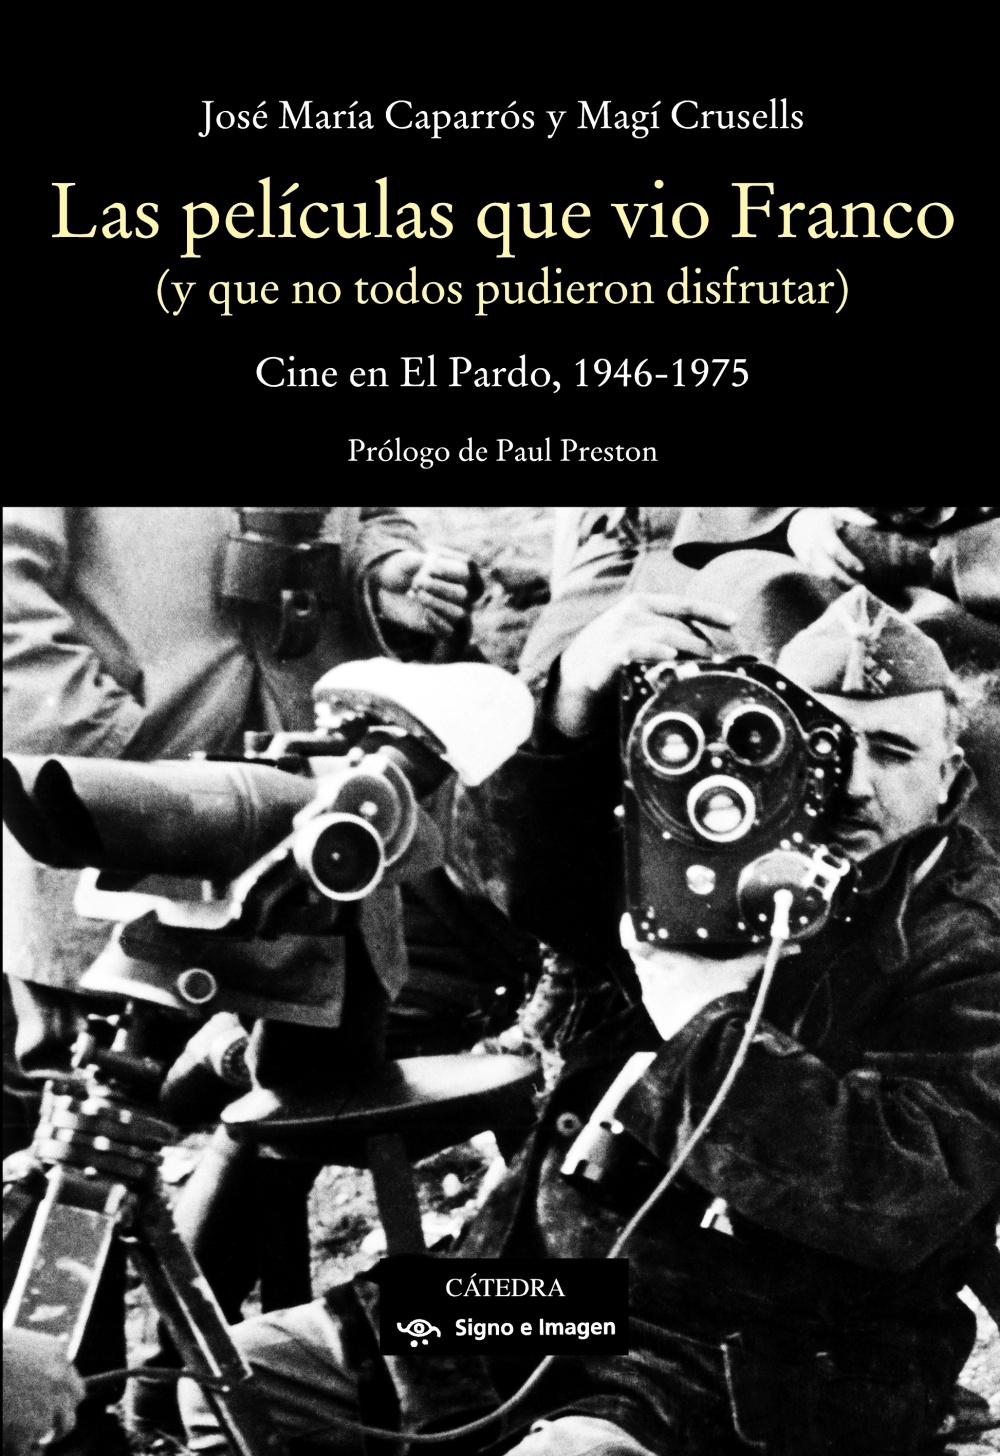 Las Películas que Vio Franco "Cine en el Pardo, 1946-1975"